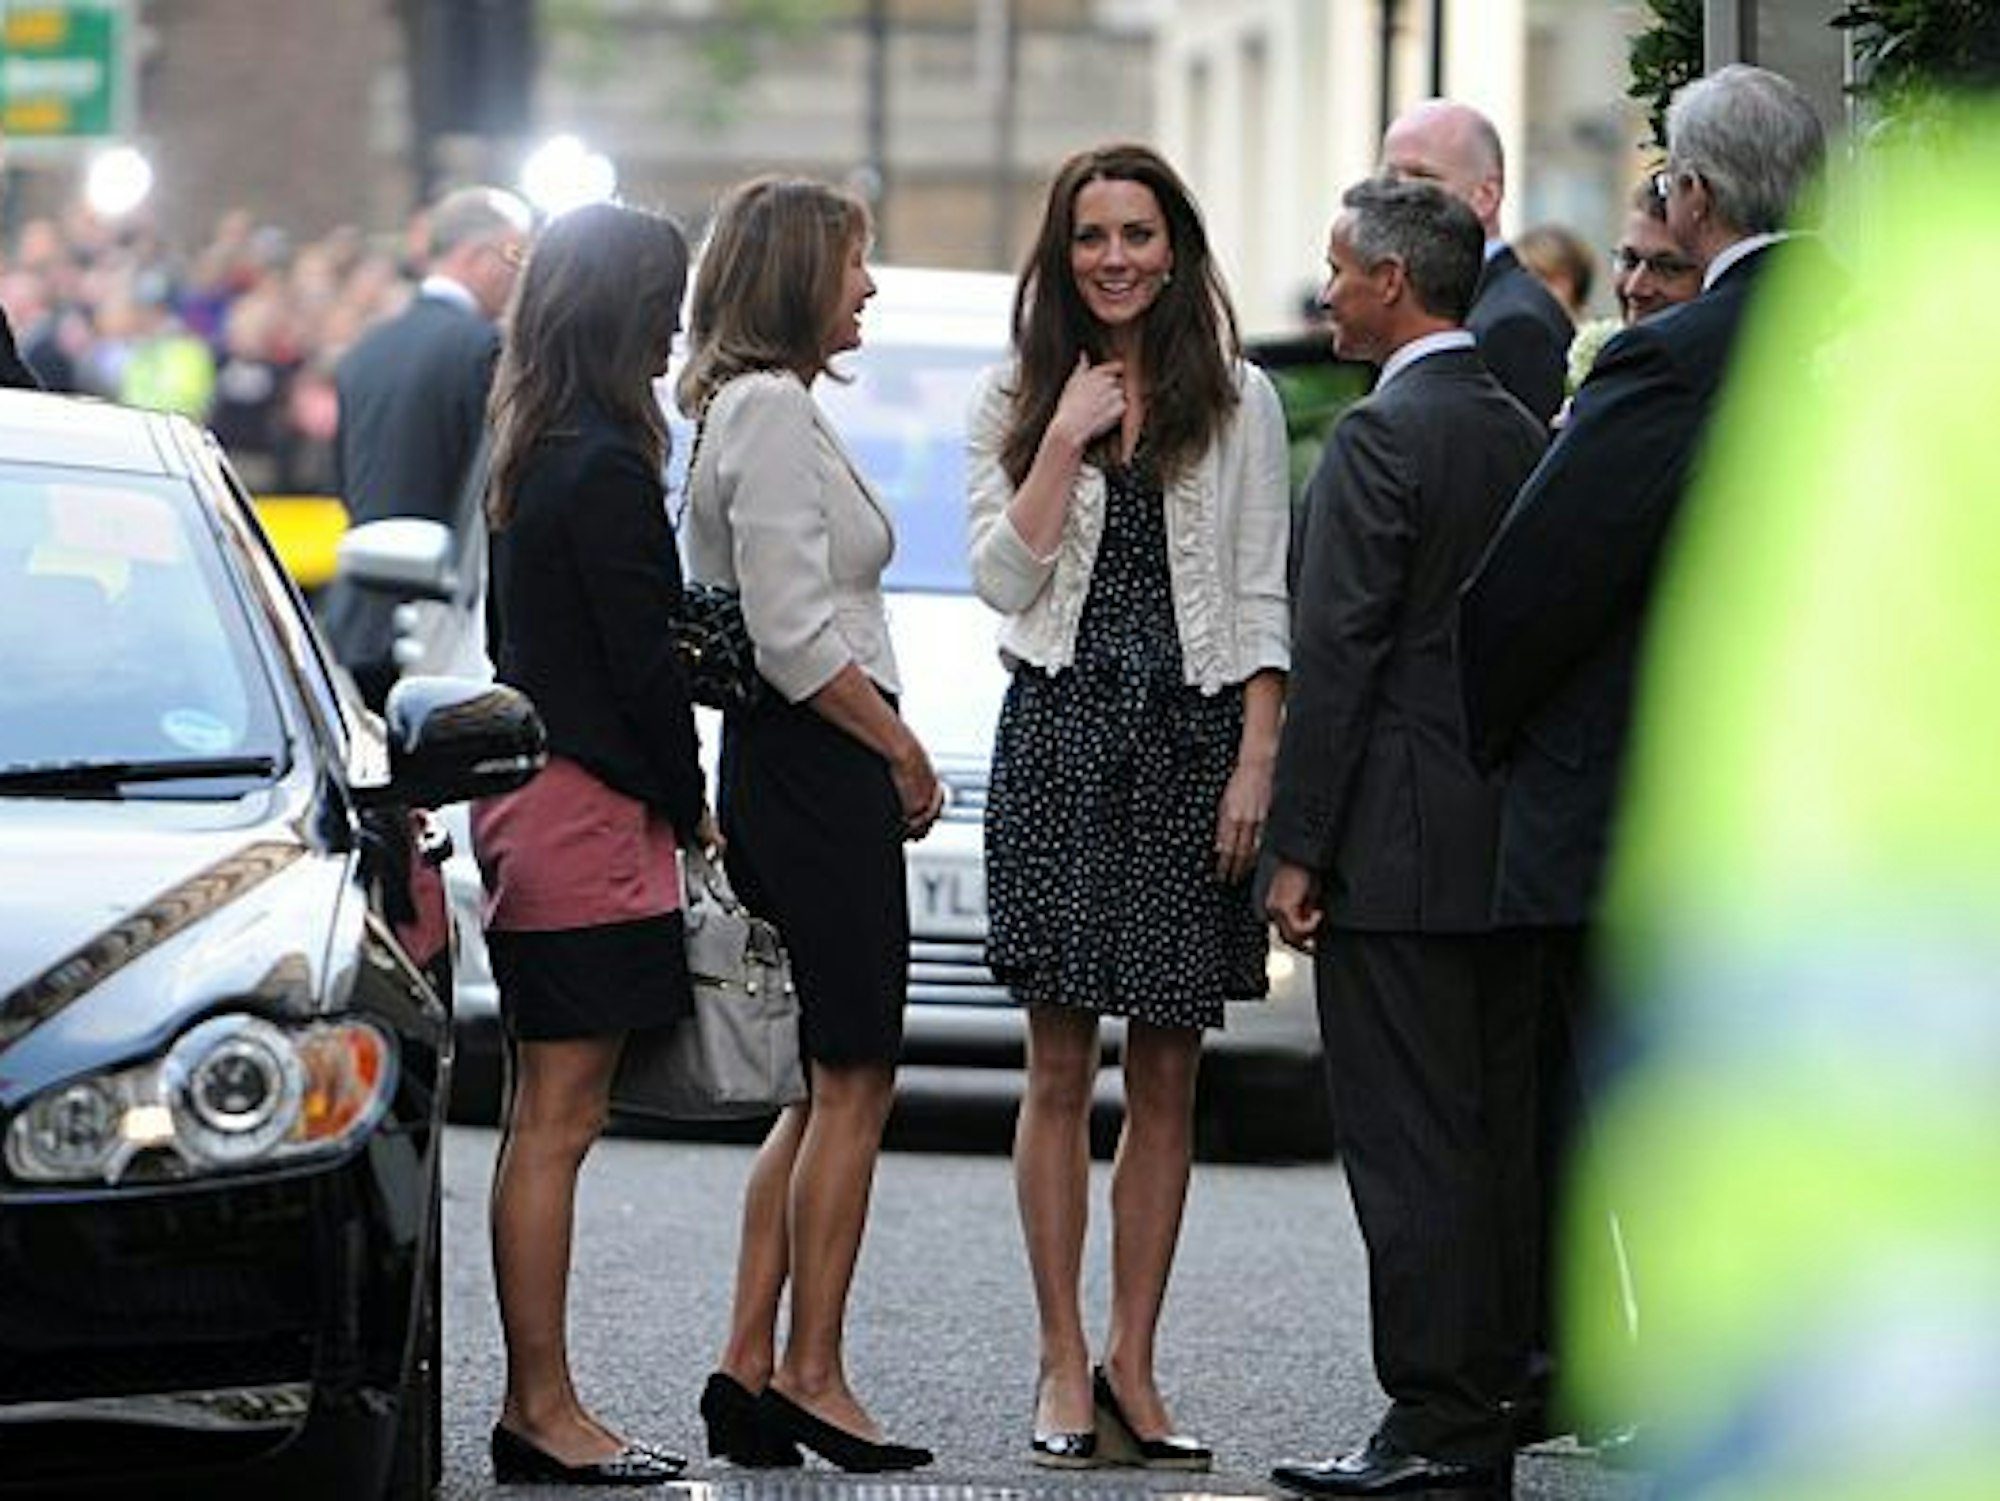 Kate Middleton (Mitte), hier mit Mutter Carole und Schwester Pippa, ist ein modisches Vorbild für junge Frauen. Die Kombi aus blauem Sommerkleid und kurzer, weißer Jacke, war in wenigen Minuten ausverkauft.